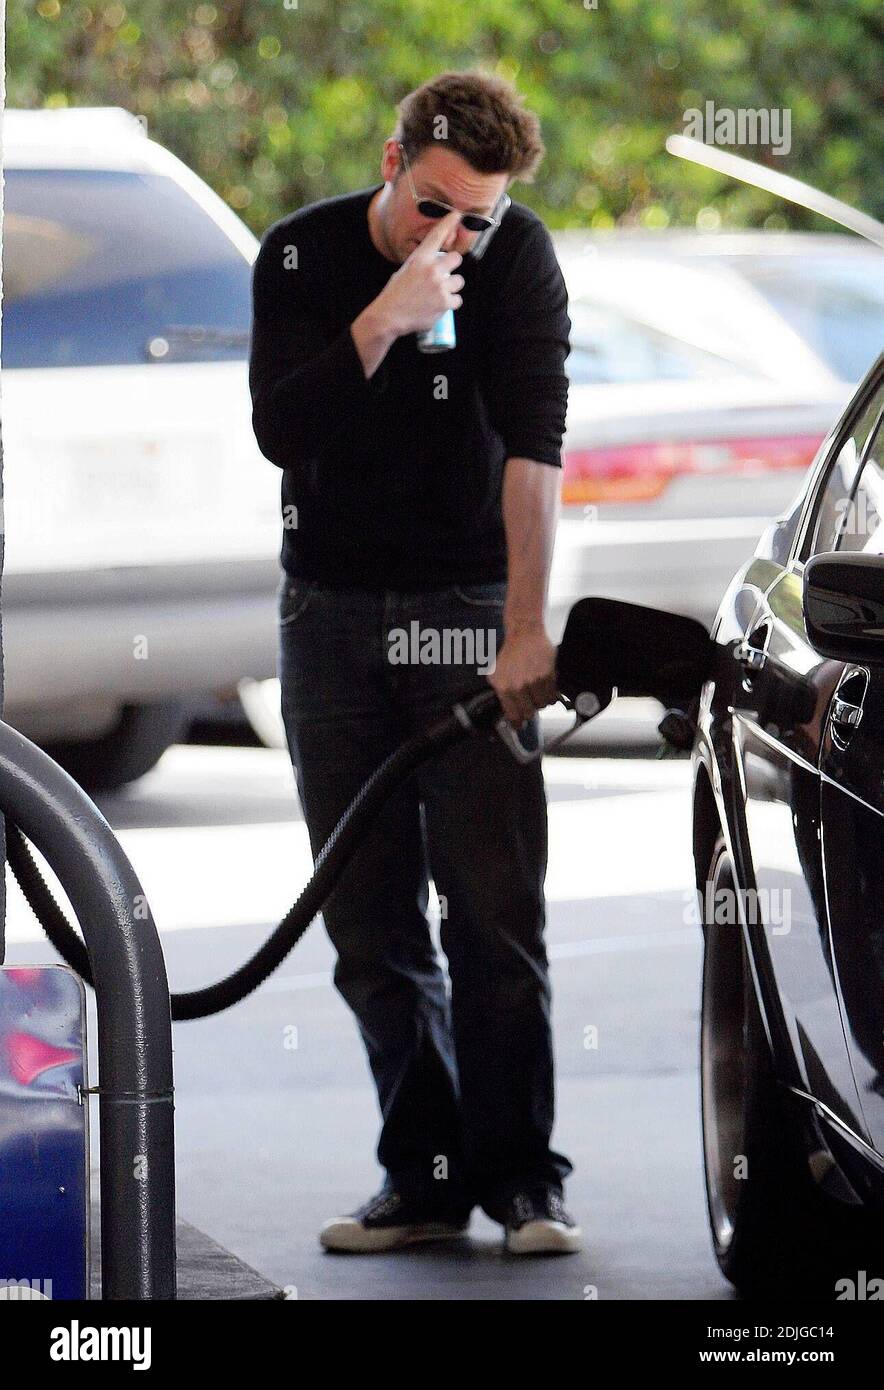 Exklusiv!! Matthew Perry mutli Aufgaben in Beverly Hills, ca. Der Schauspieler unterhielt sich auf dem Handy, während er seinen Tank füllte und sich an einer Dose des Energy Drinks, Diet Red Bull, hielt 03/02/06 [[rac]] Stockfoto